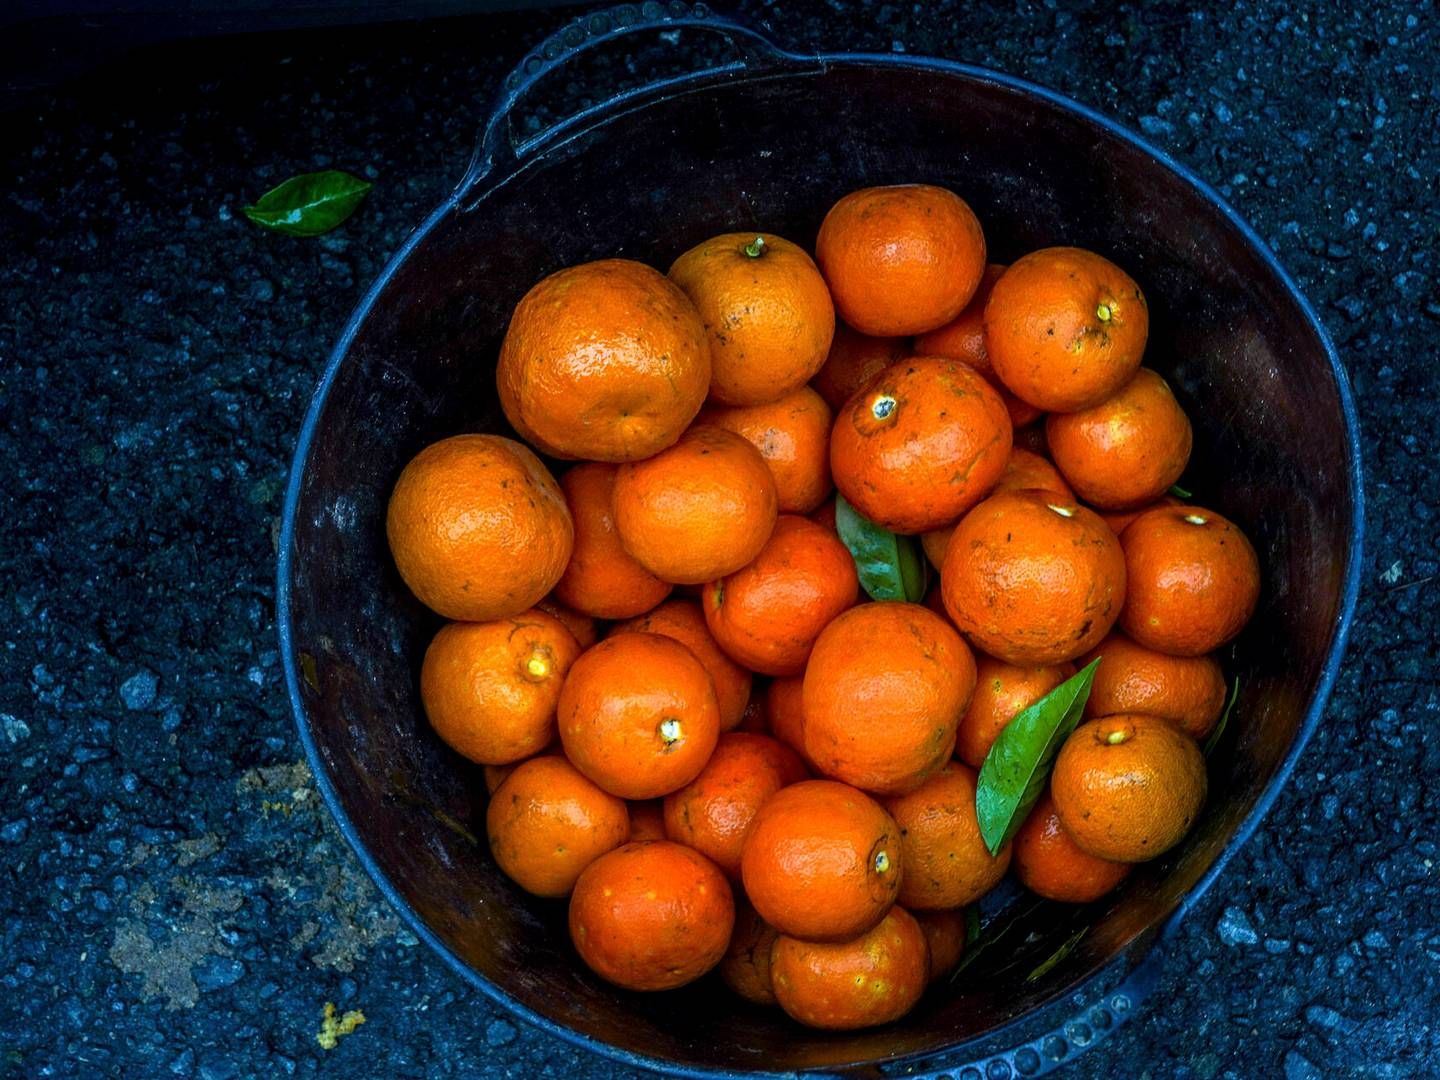 Dårligt vejr og sygdomme har haft store konsekvenser for udbyttet af appelsinhøsten i Florida - noget, der nu har konsekvenser for det globale marked, inklusive i Danmark, hvor producenter som Rynkeby varsler underlevering og tomme supermarkedshylder. | Foto: Eduardo Briones/AP/Ritzau Scanpix